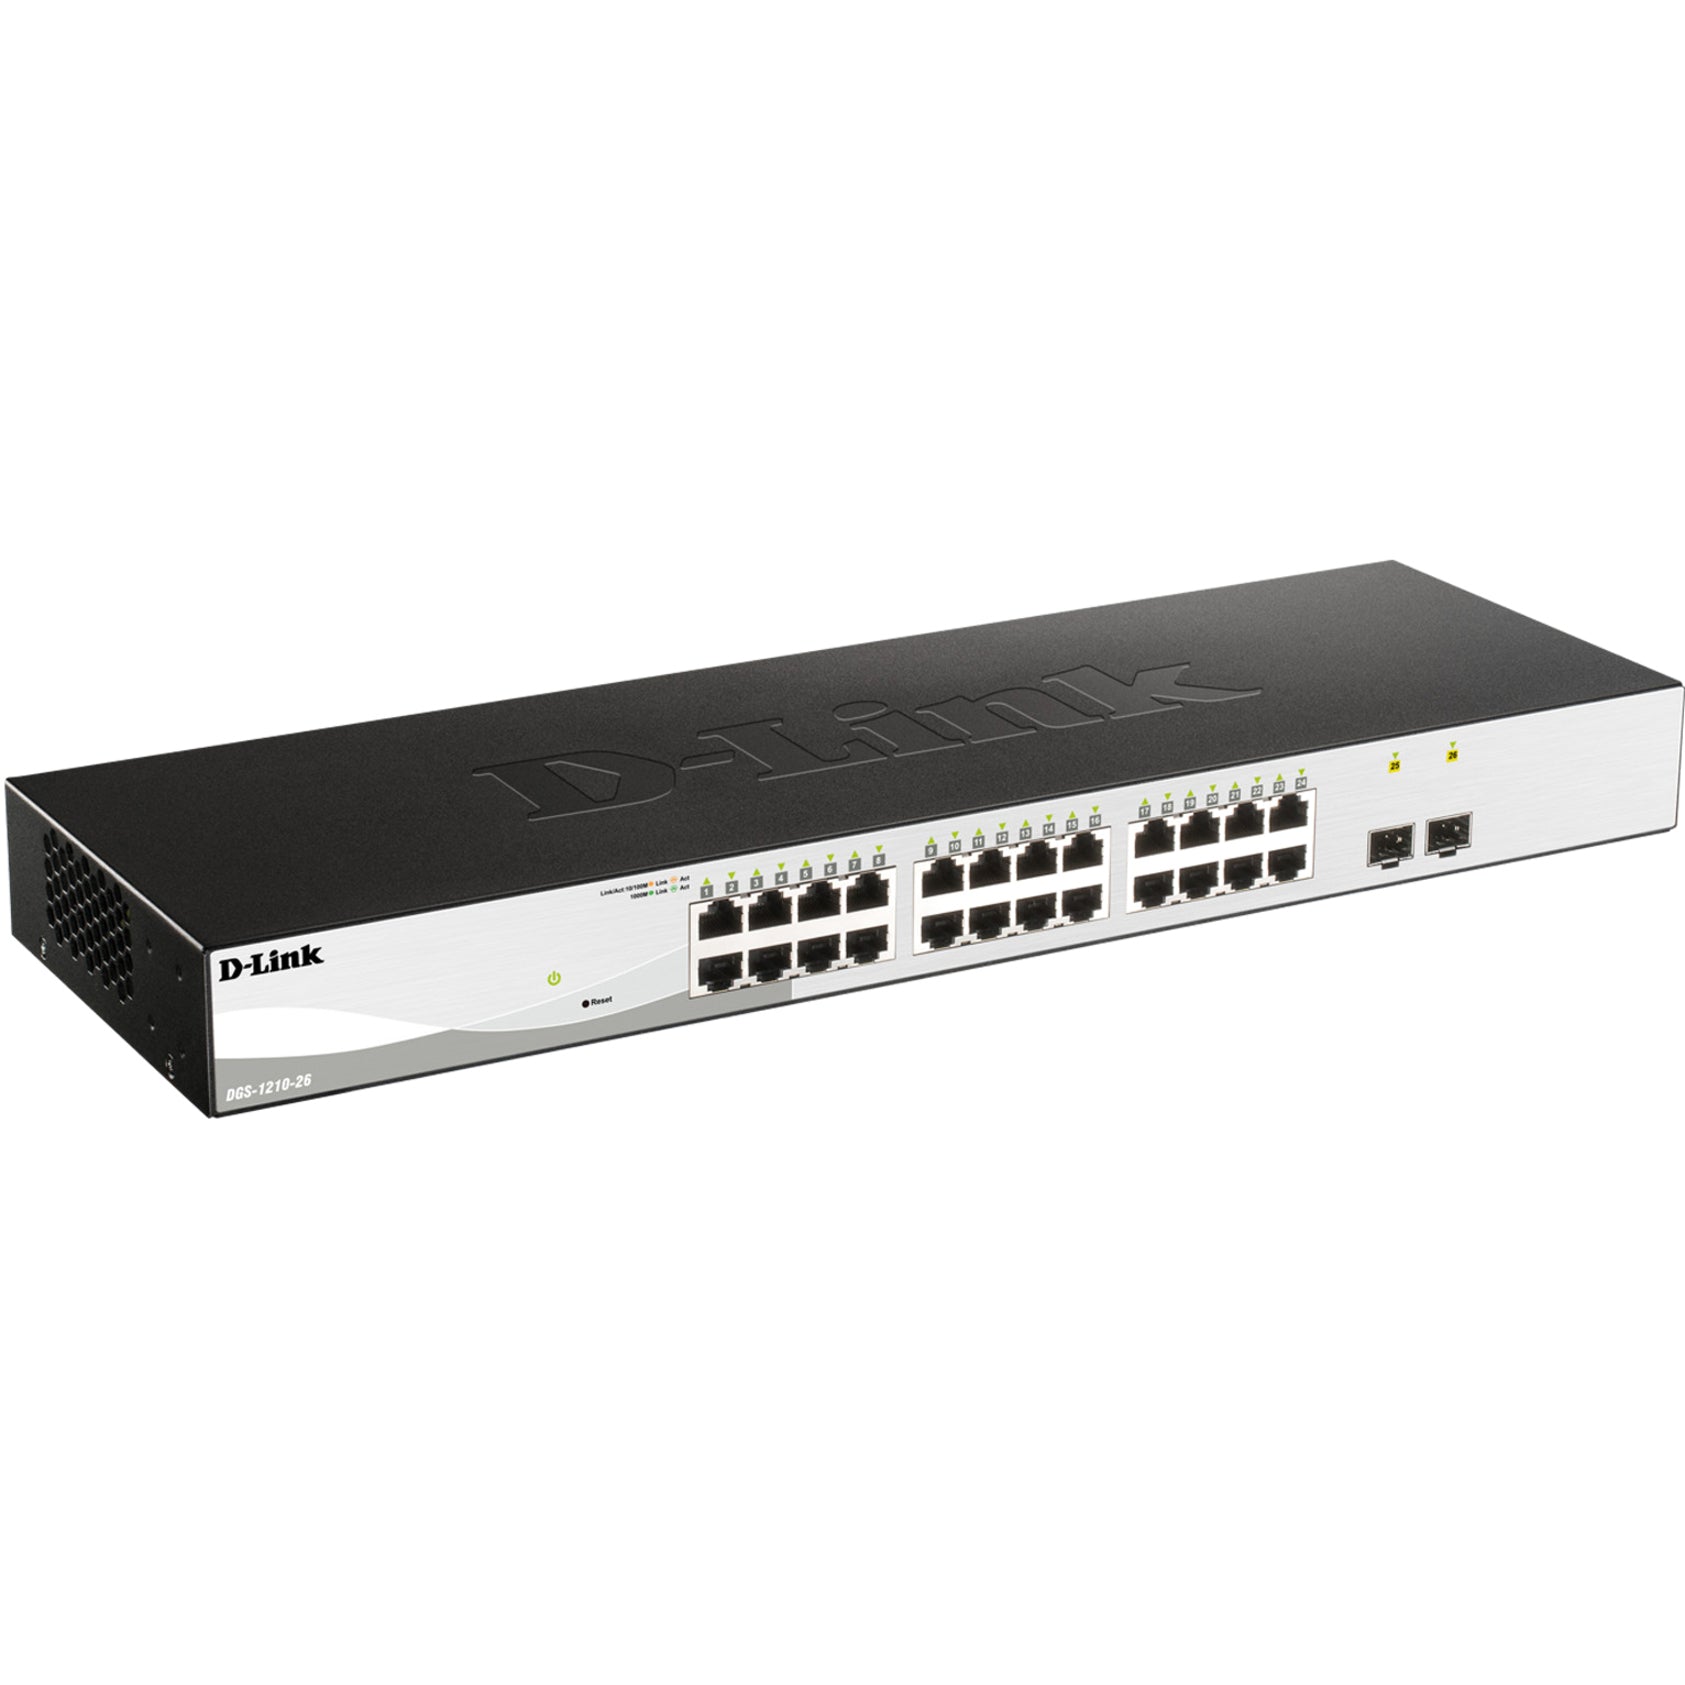 D-Link DGS-1210-26 Smart Plus Ethernet Switch, 26-Port Gigabit with 2 SFP